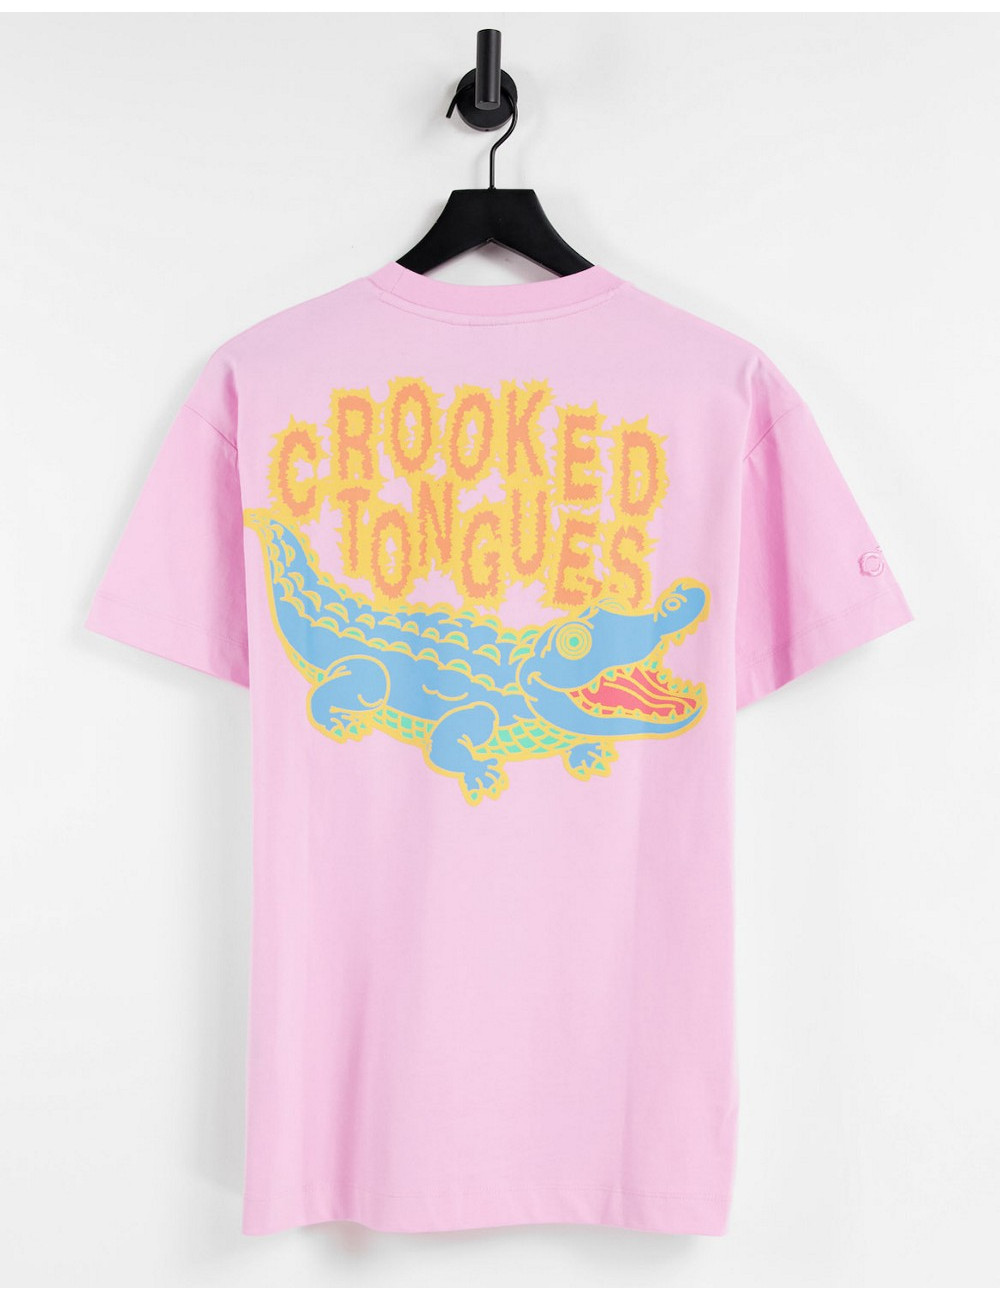 Crooked Tongues t-shirt...